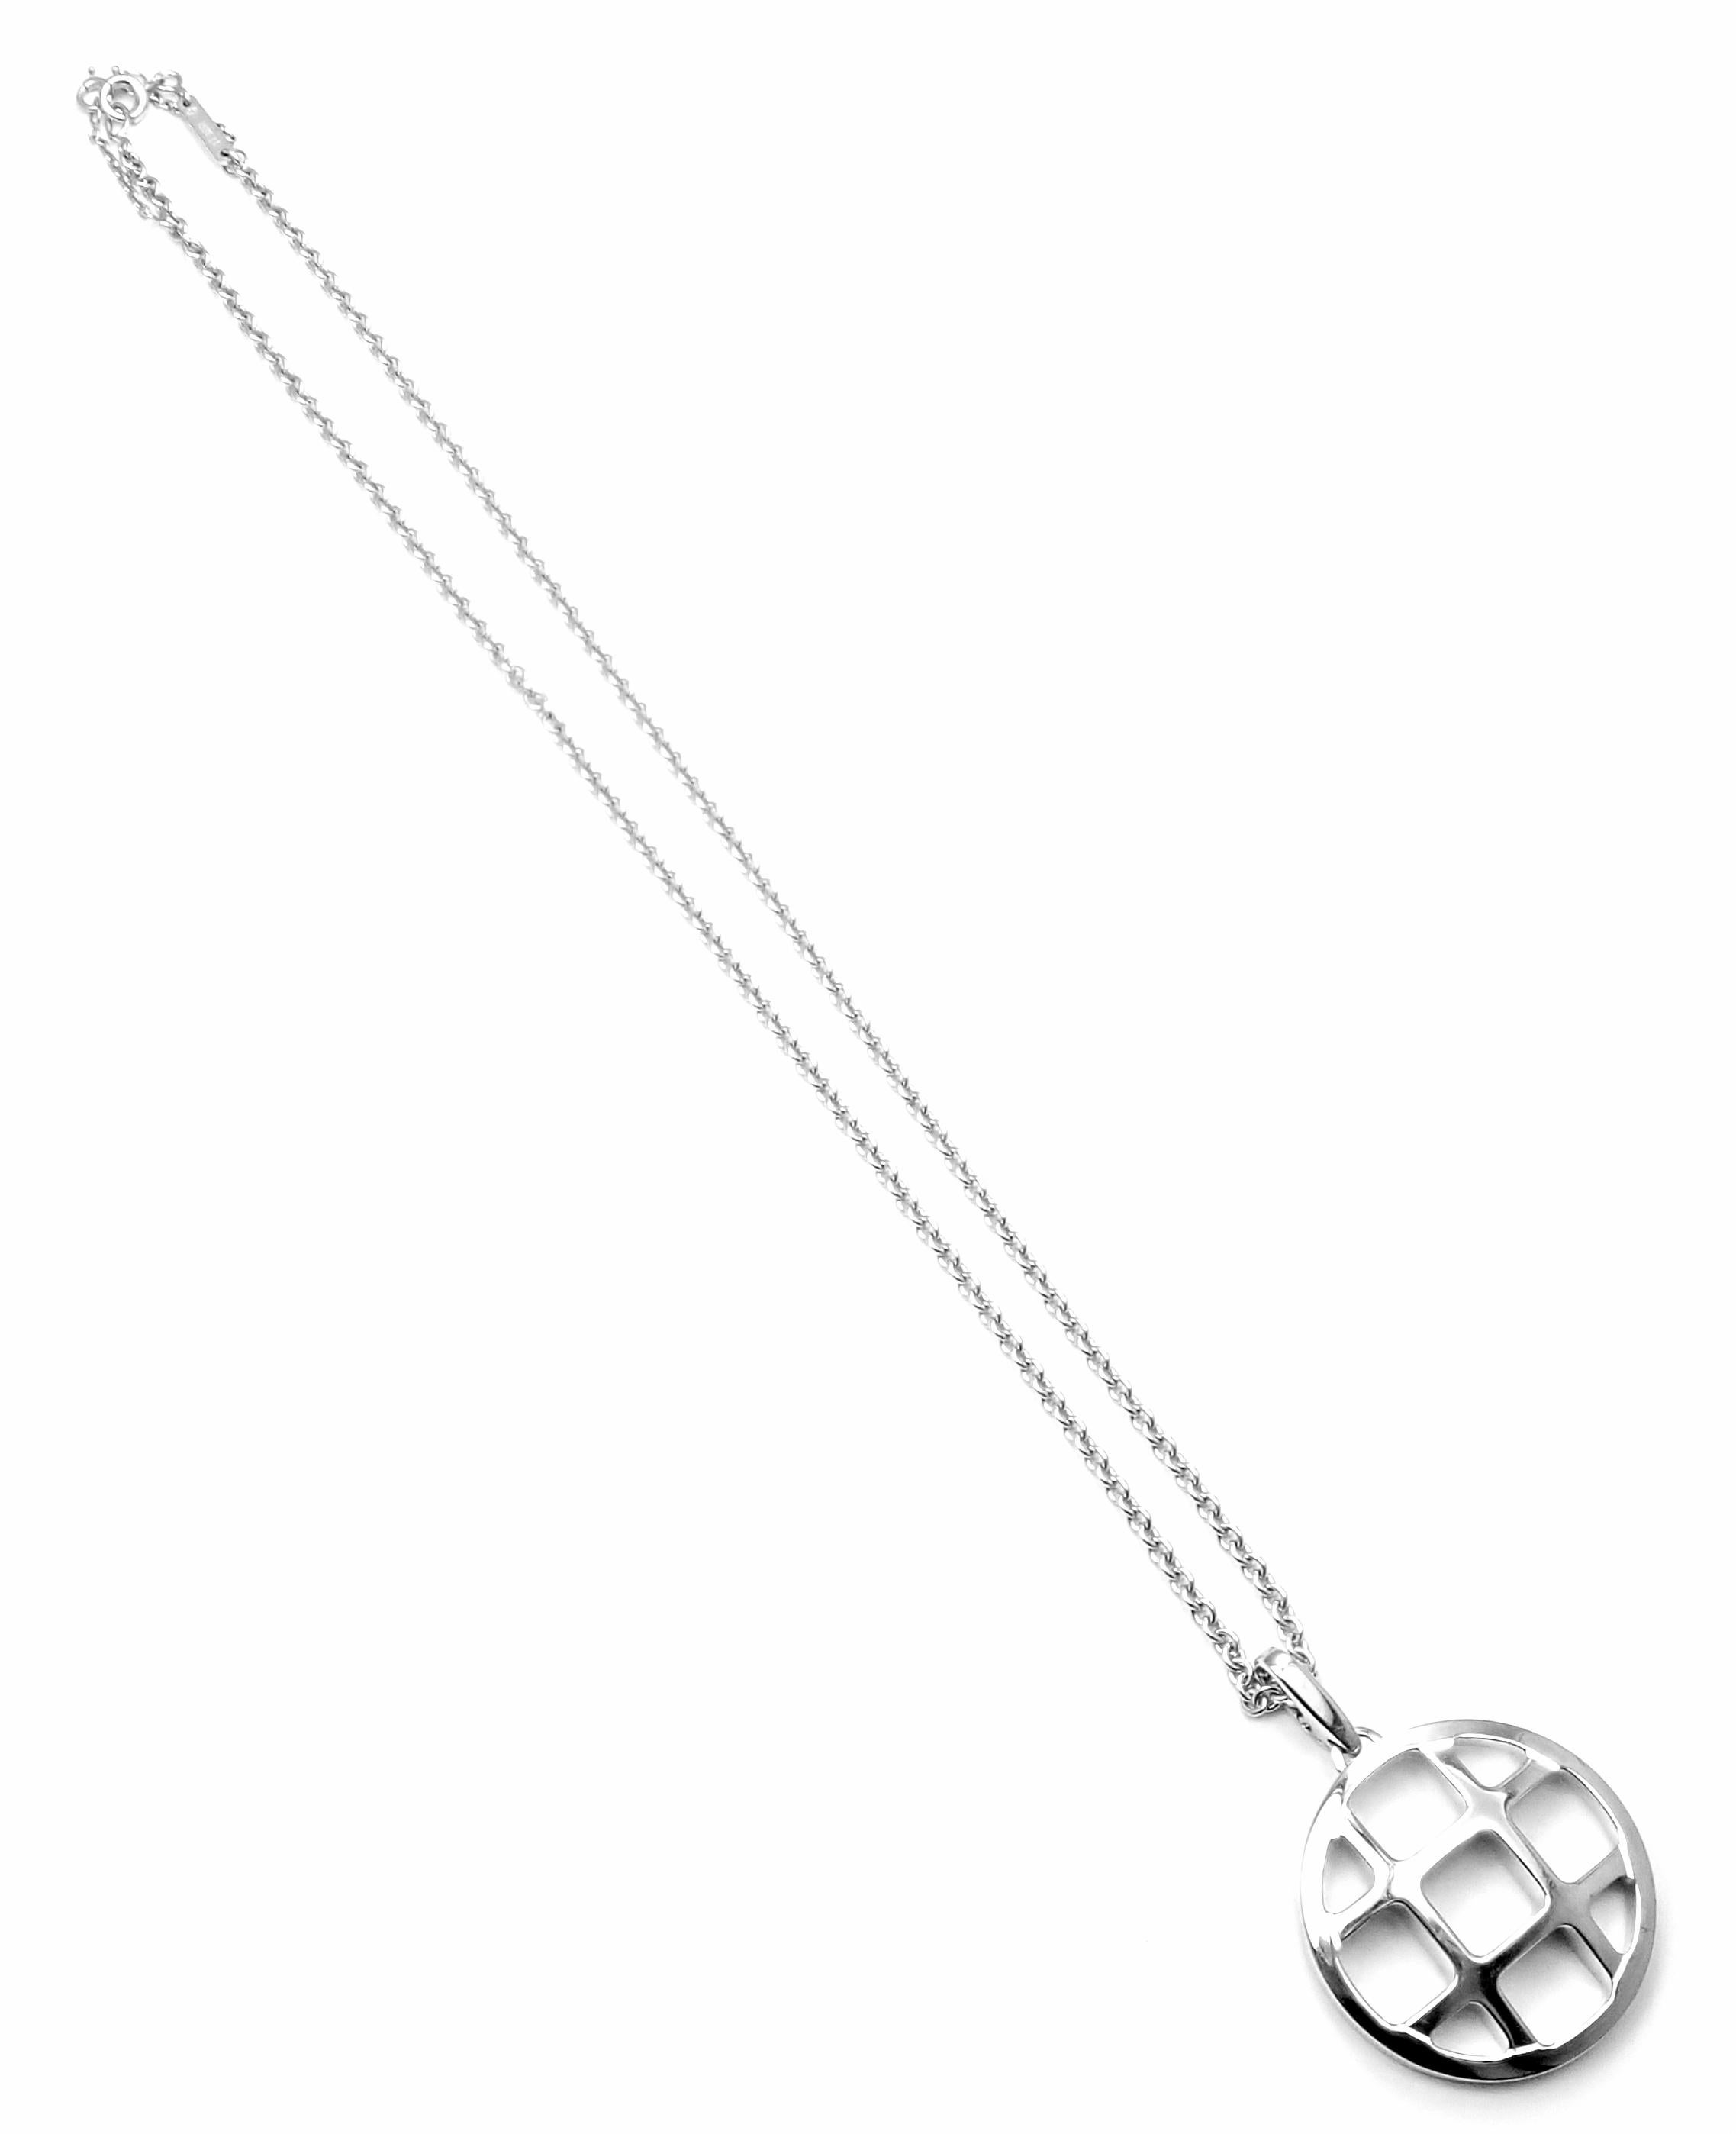 Cartier Pasha De Cartier White Gold Pendant Chain Necklace For Sale 2